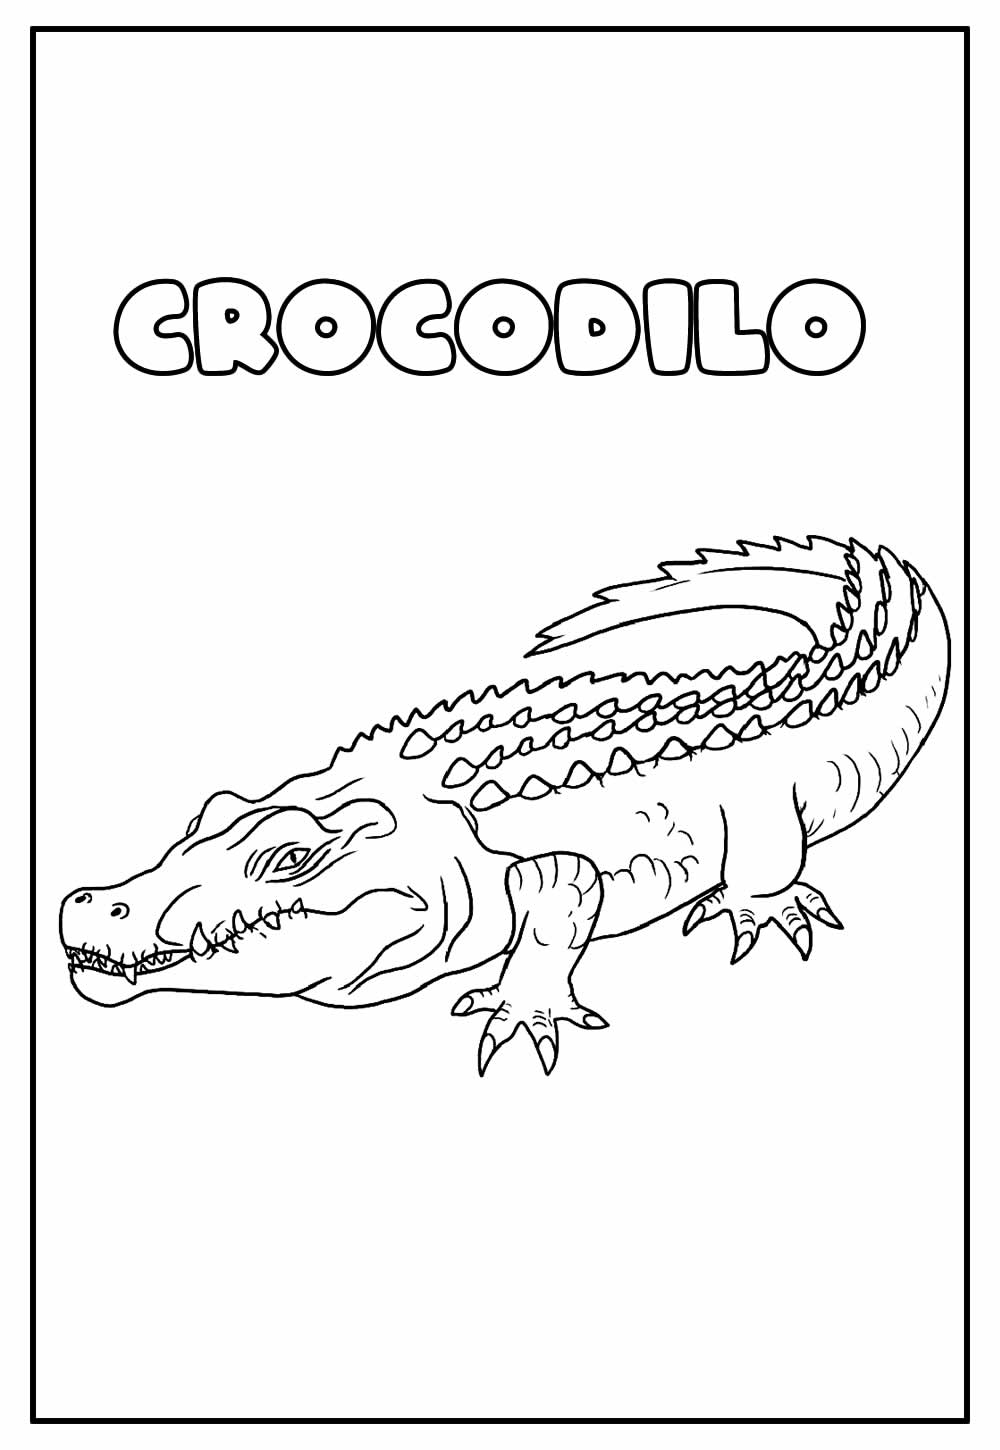 Desenho Educativo de Crocodilo para pintar